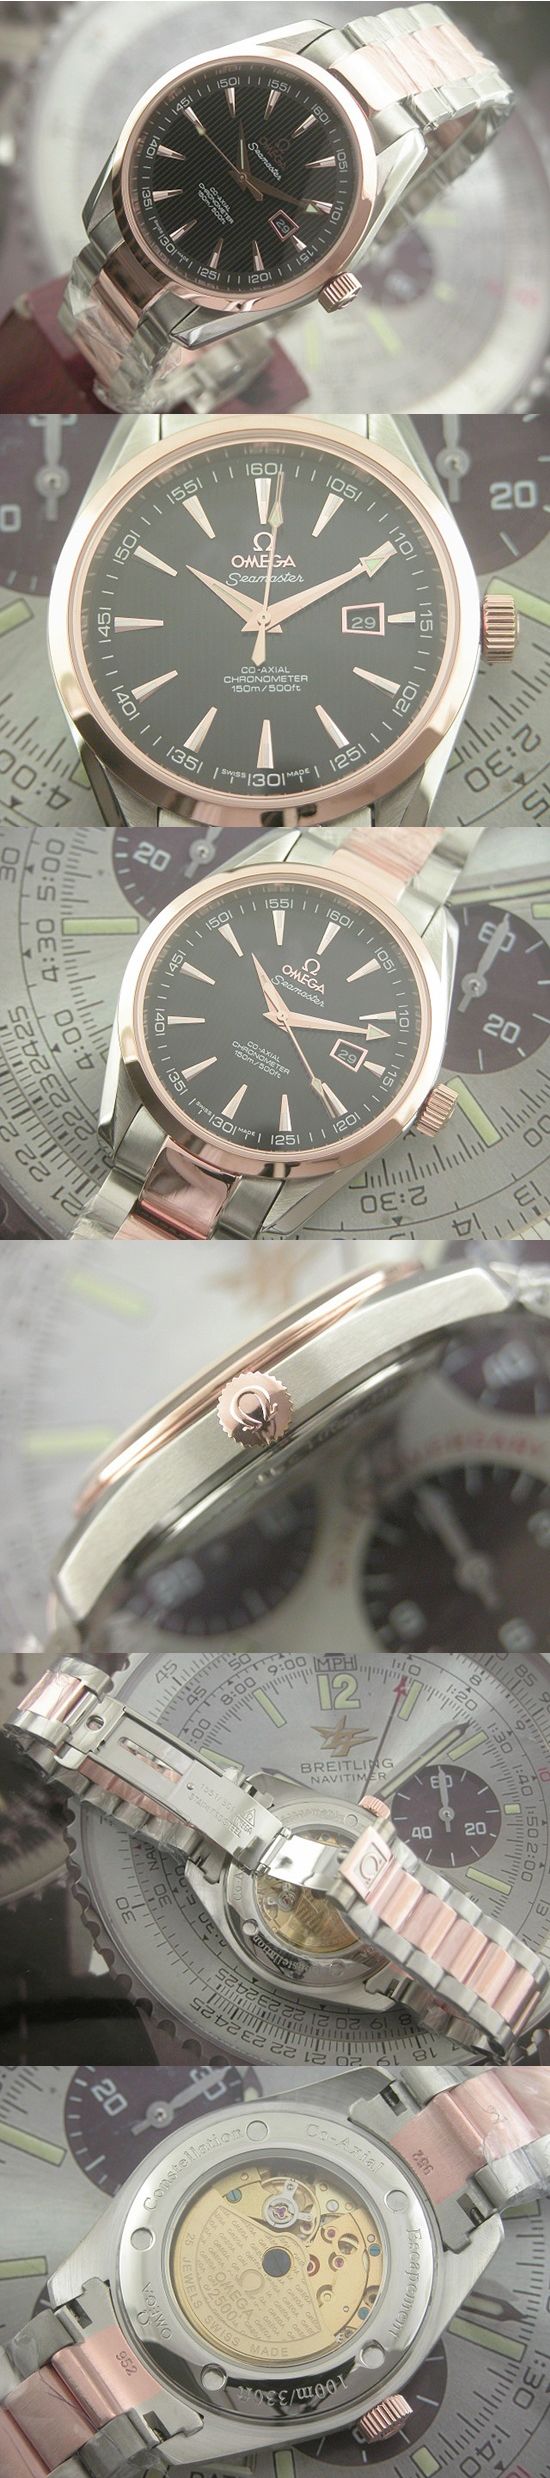 おしゃれなブランド時計がオメガ-シーマスターOMEGA-2373.70-ax-男性用を提供します.